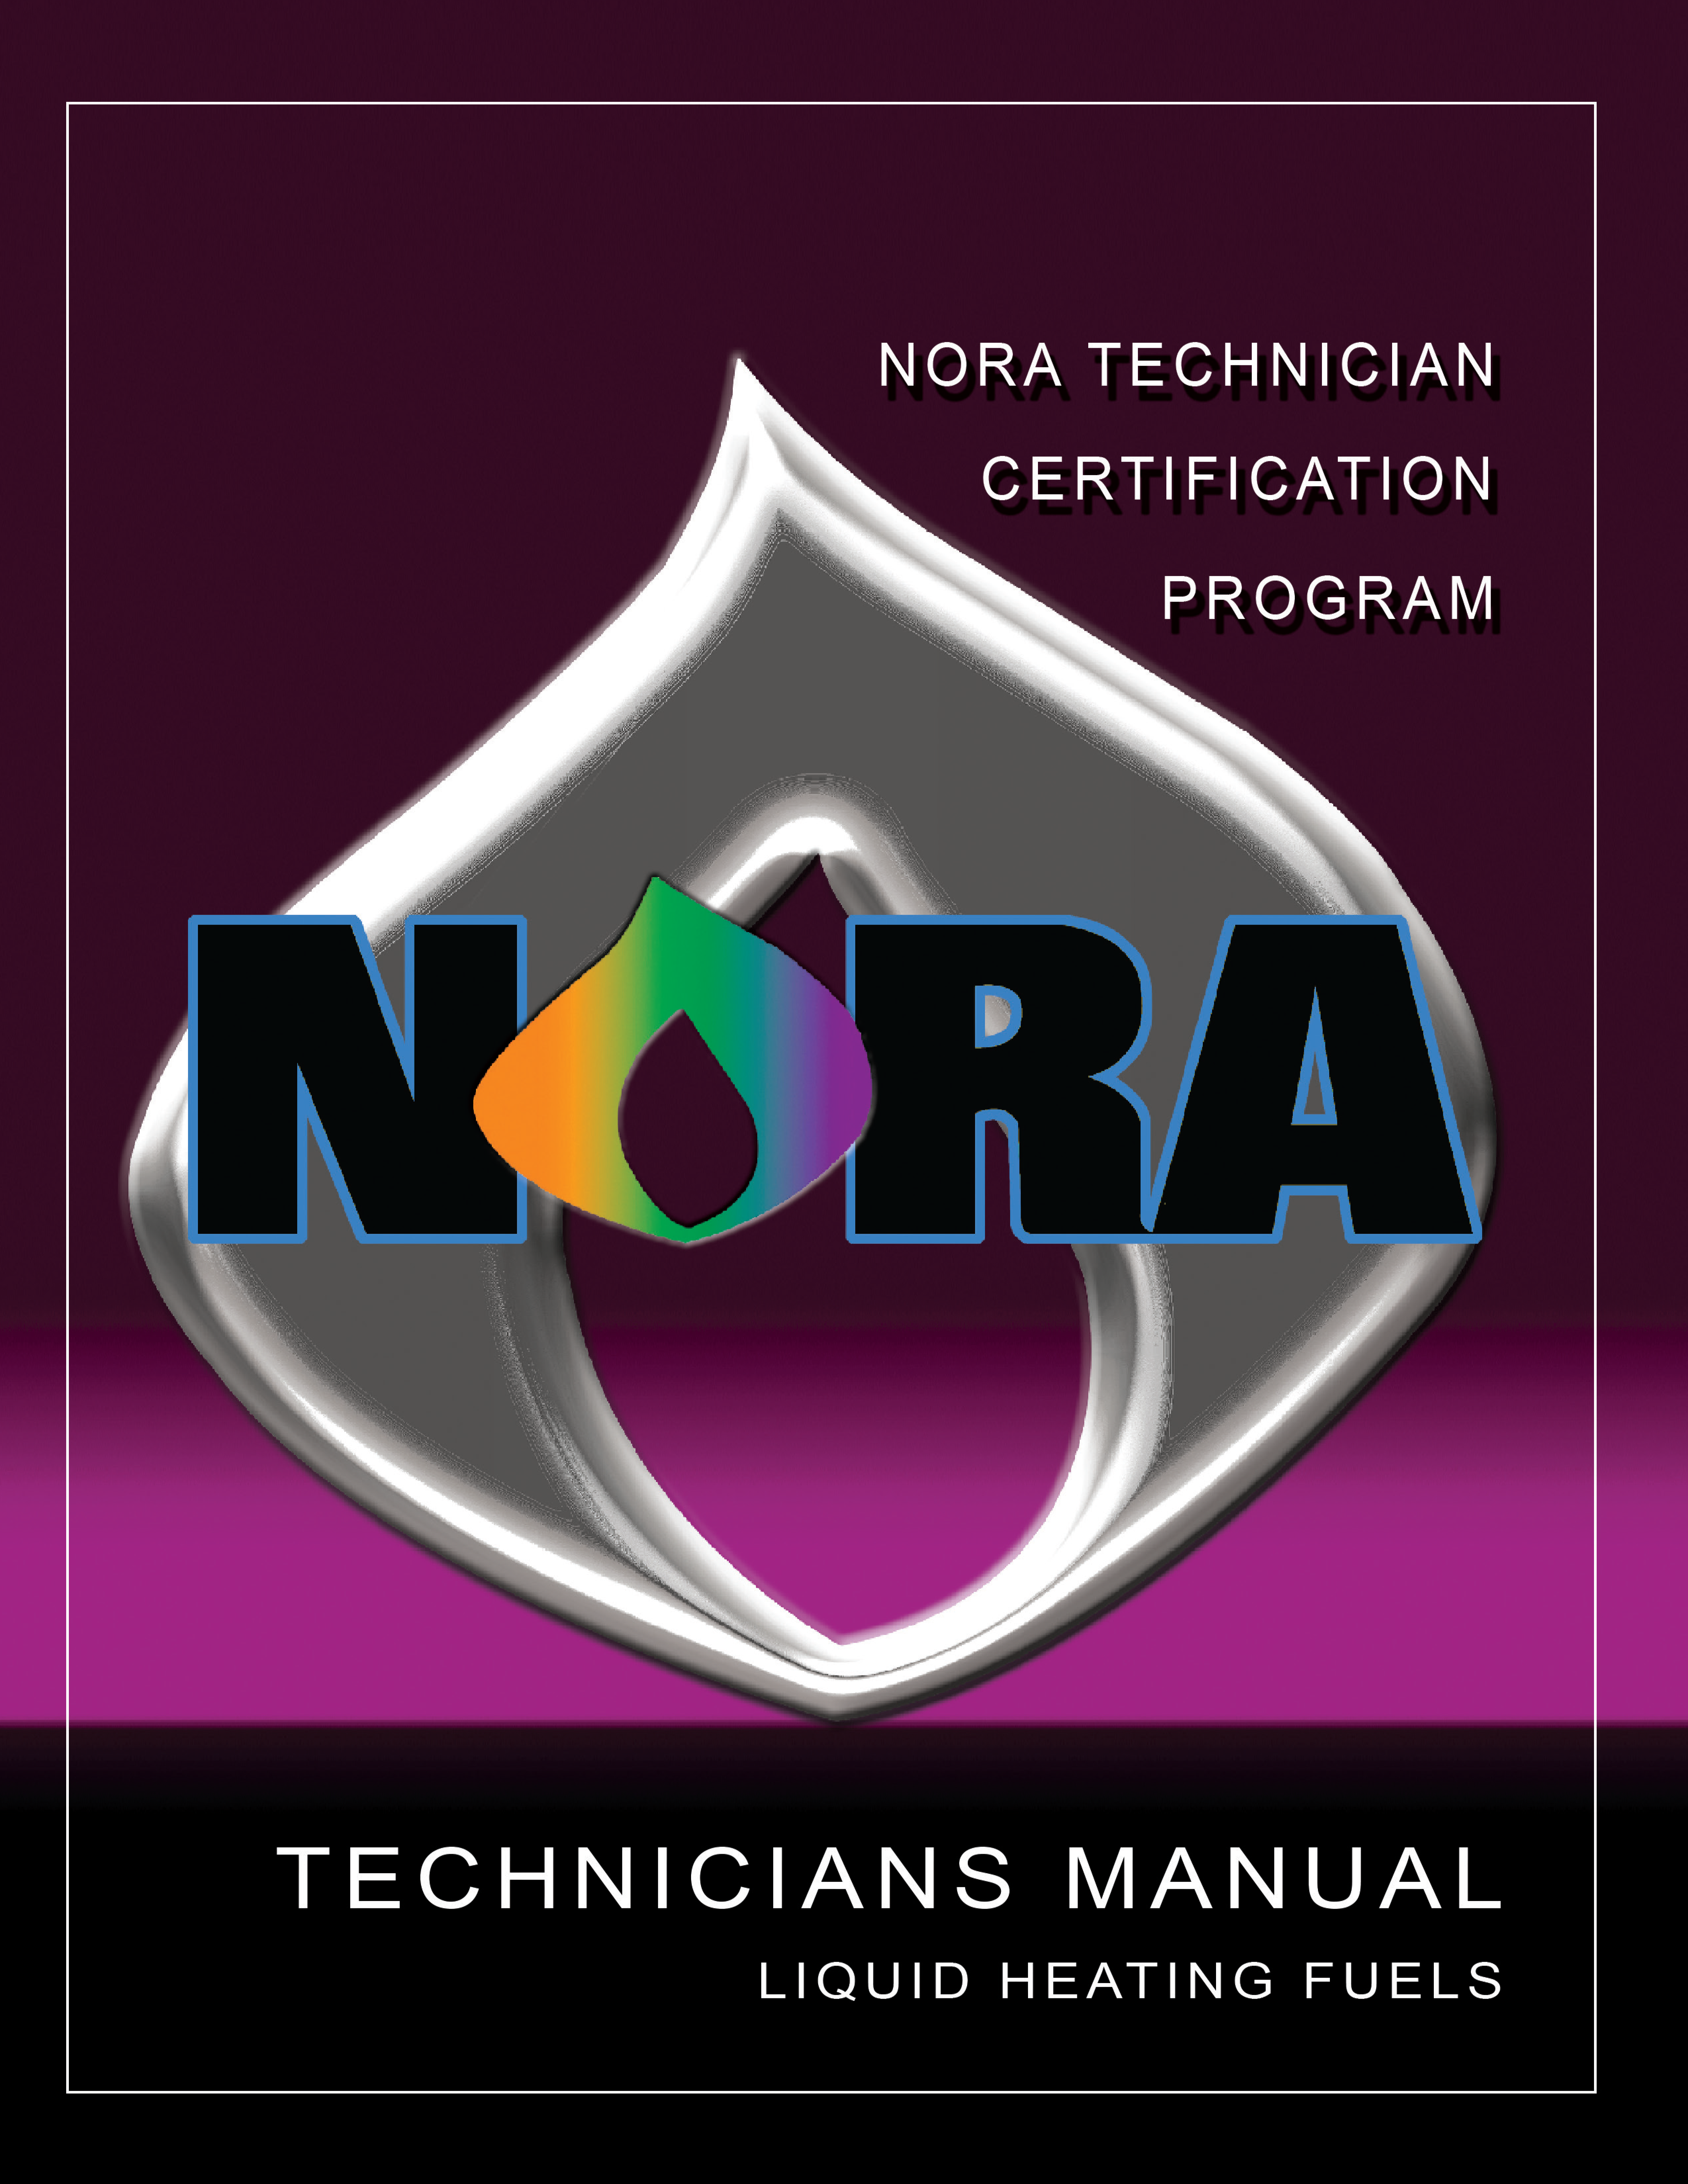 NORA Technicians Manual Liquid Heating Fuels